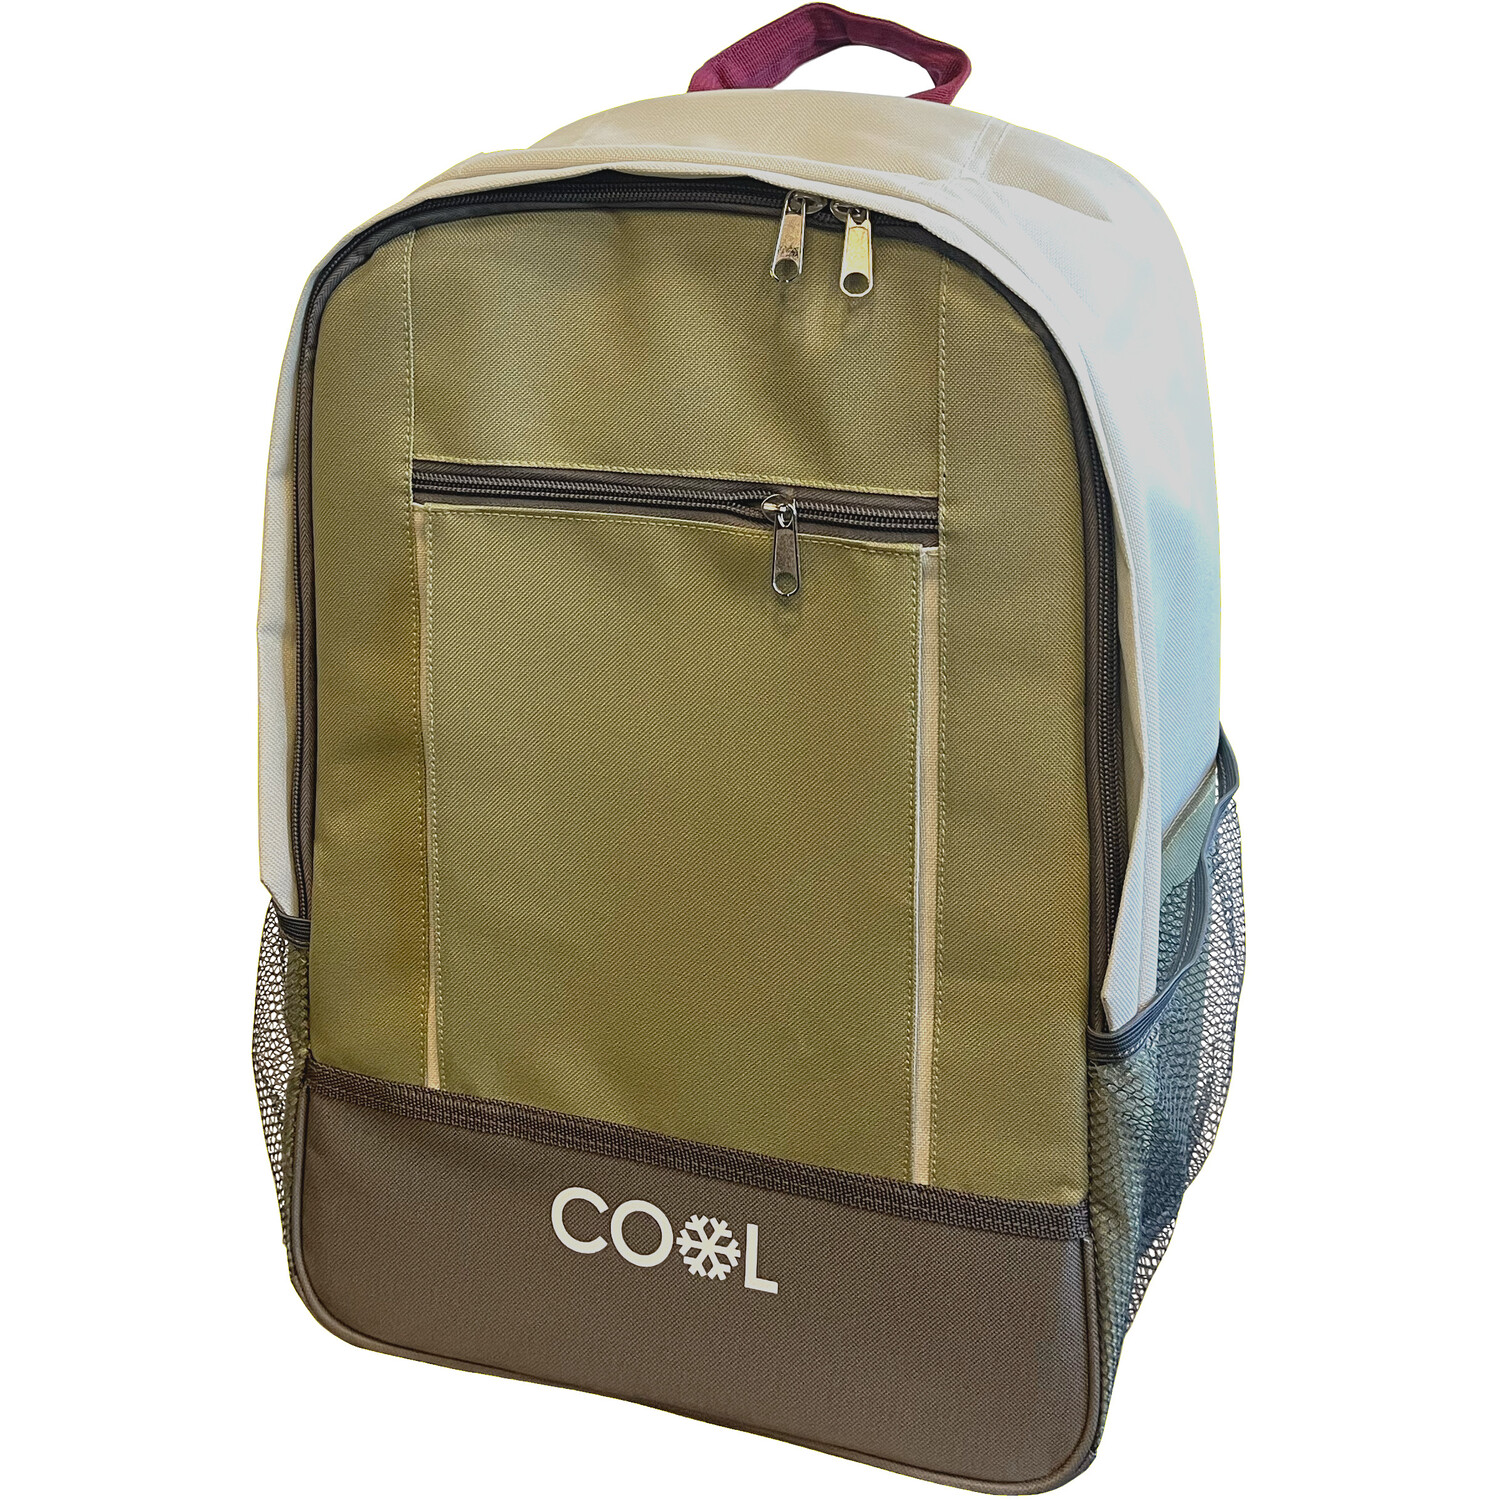 Cooler Picnic Backpack  - 20l Image 1